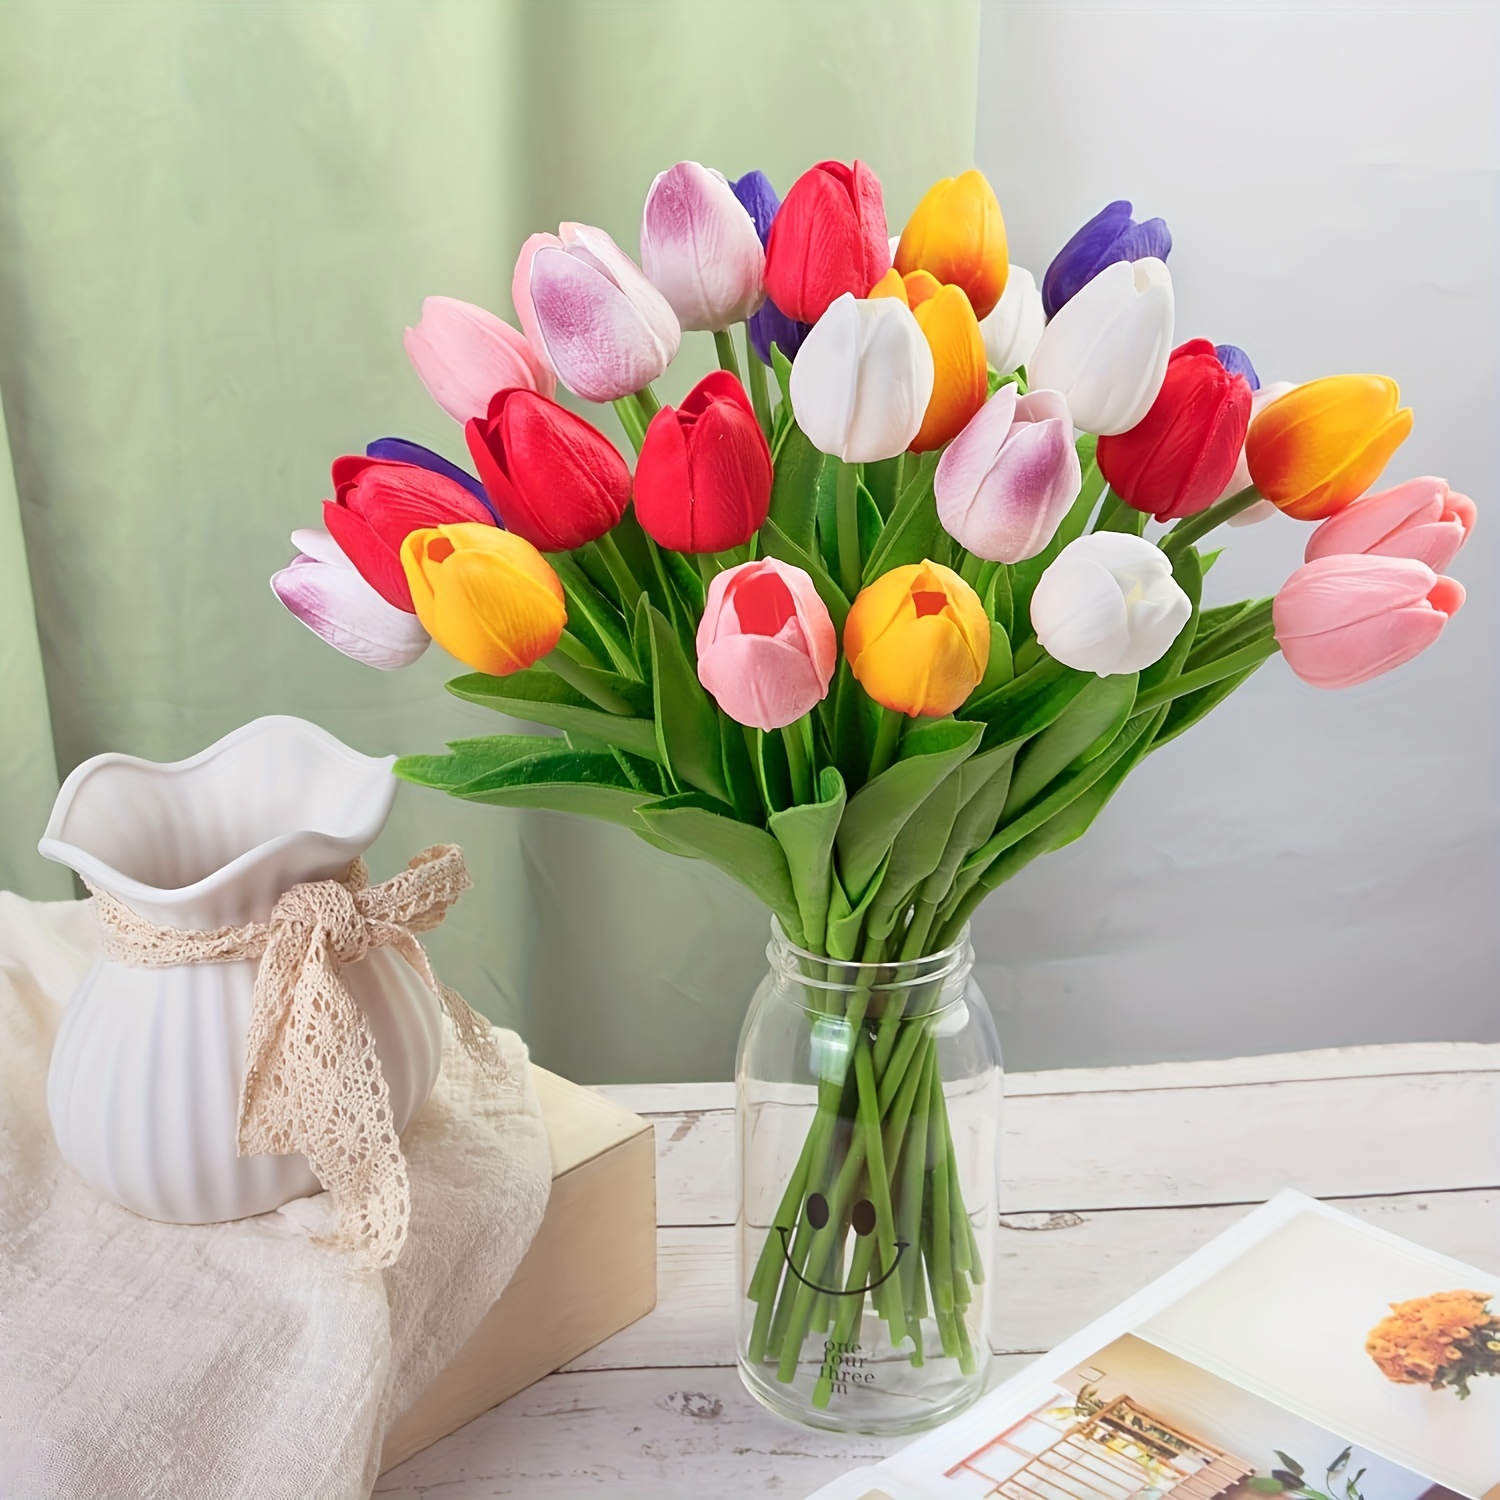 

10pcs, Artificial Tulip Bouquet, Multi-color Pu Tulips, Realistic Faux Flower Arrangement, Home Decor, Wedding Decorations, Adjustable Stems, Vivid Petals